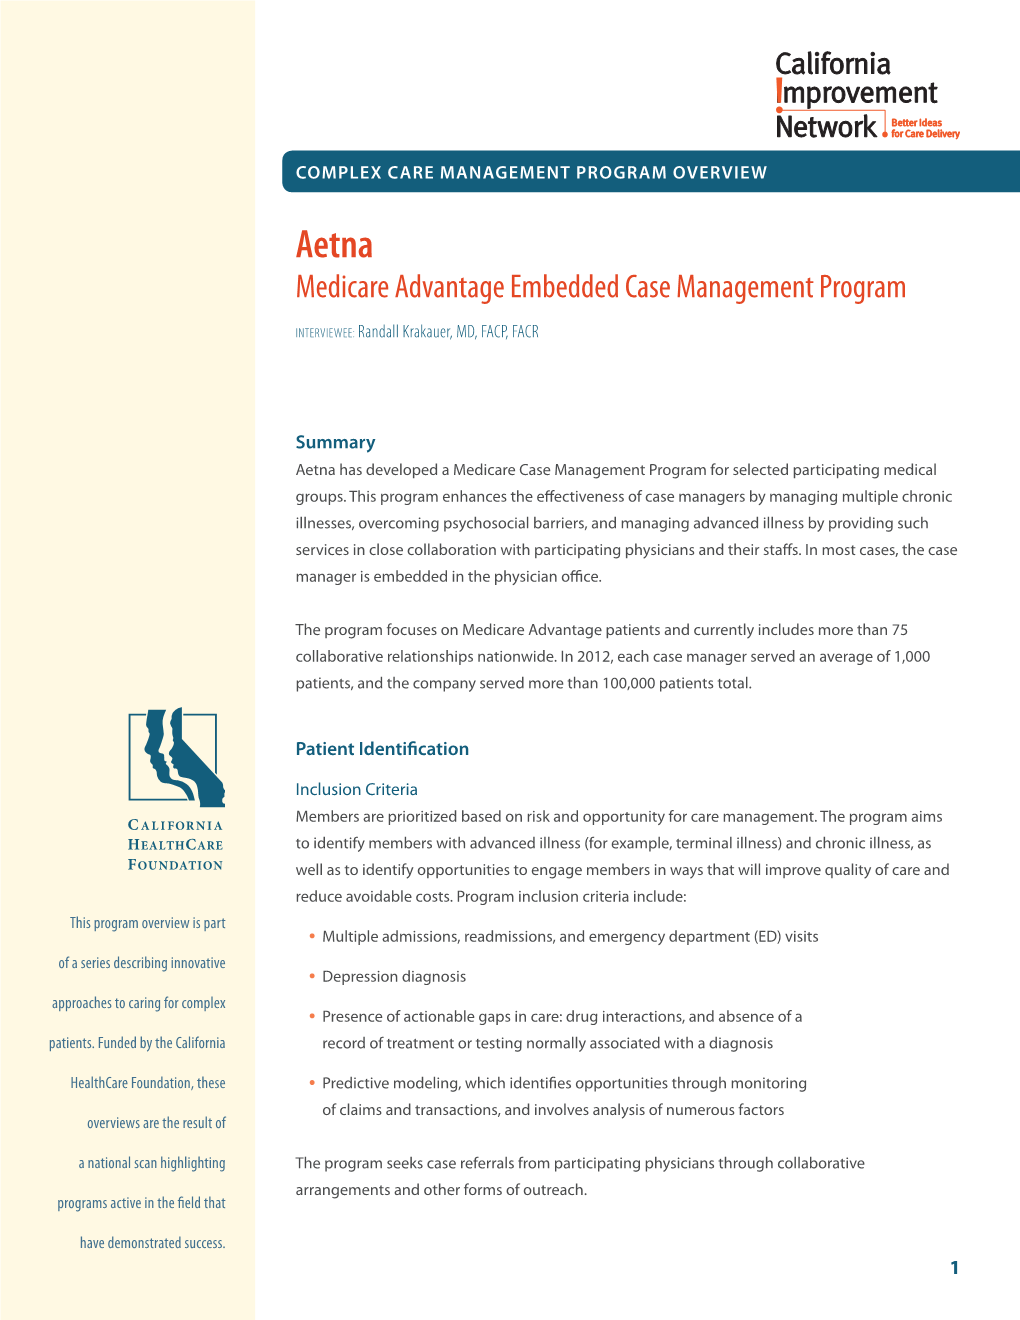 Complex Care Management Program Overviews: General (PDF)